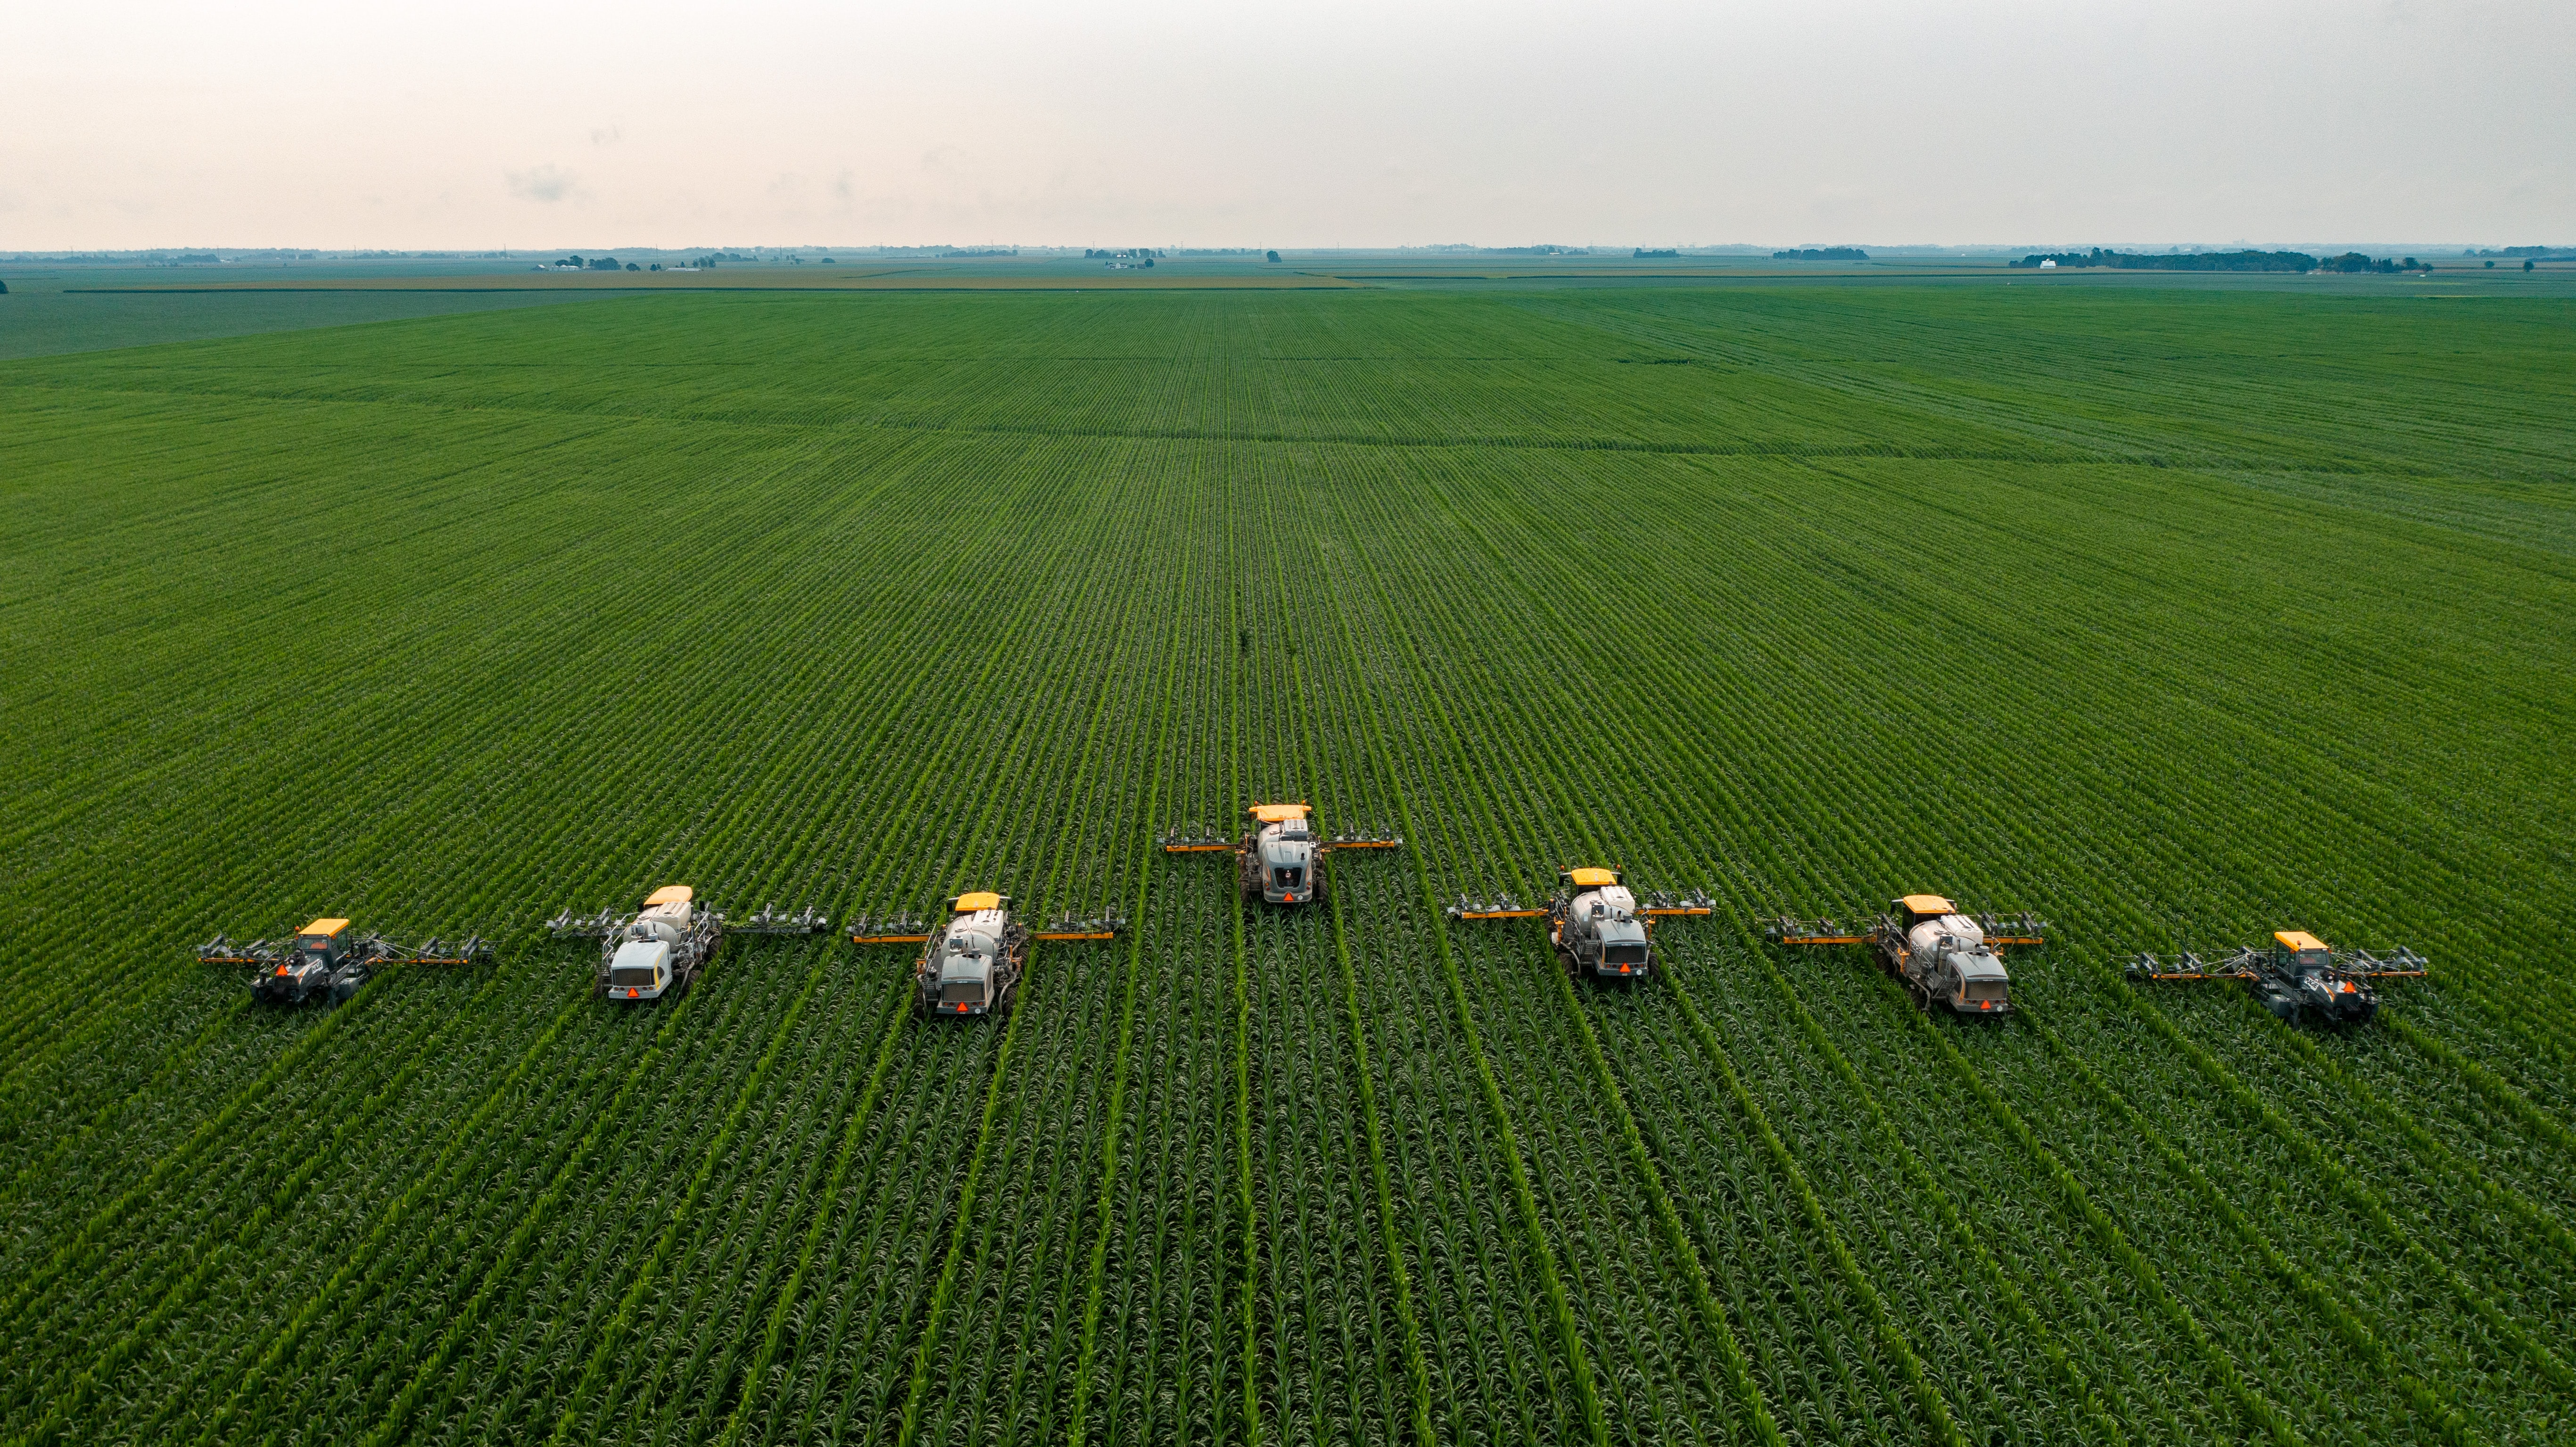 Seven harvesting machine work their way through a crop field